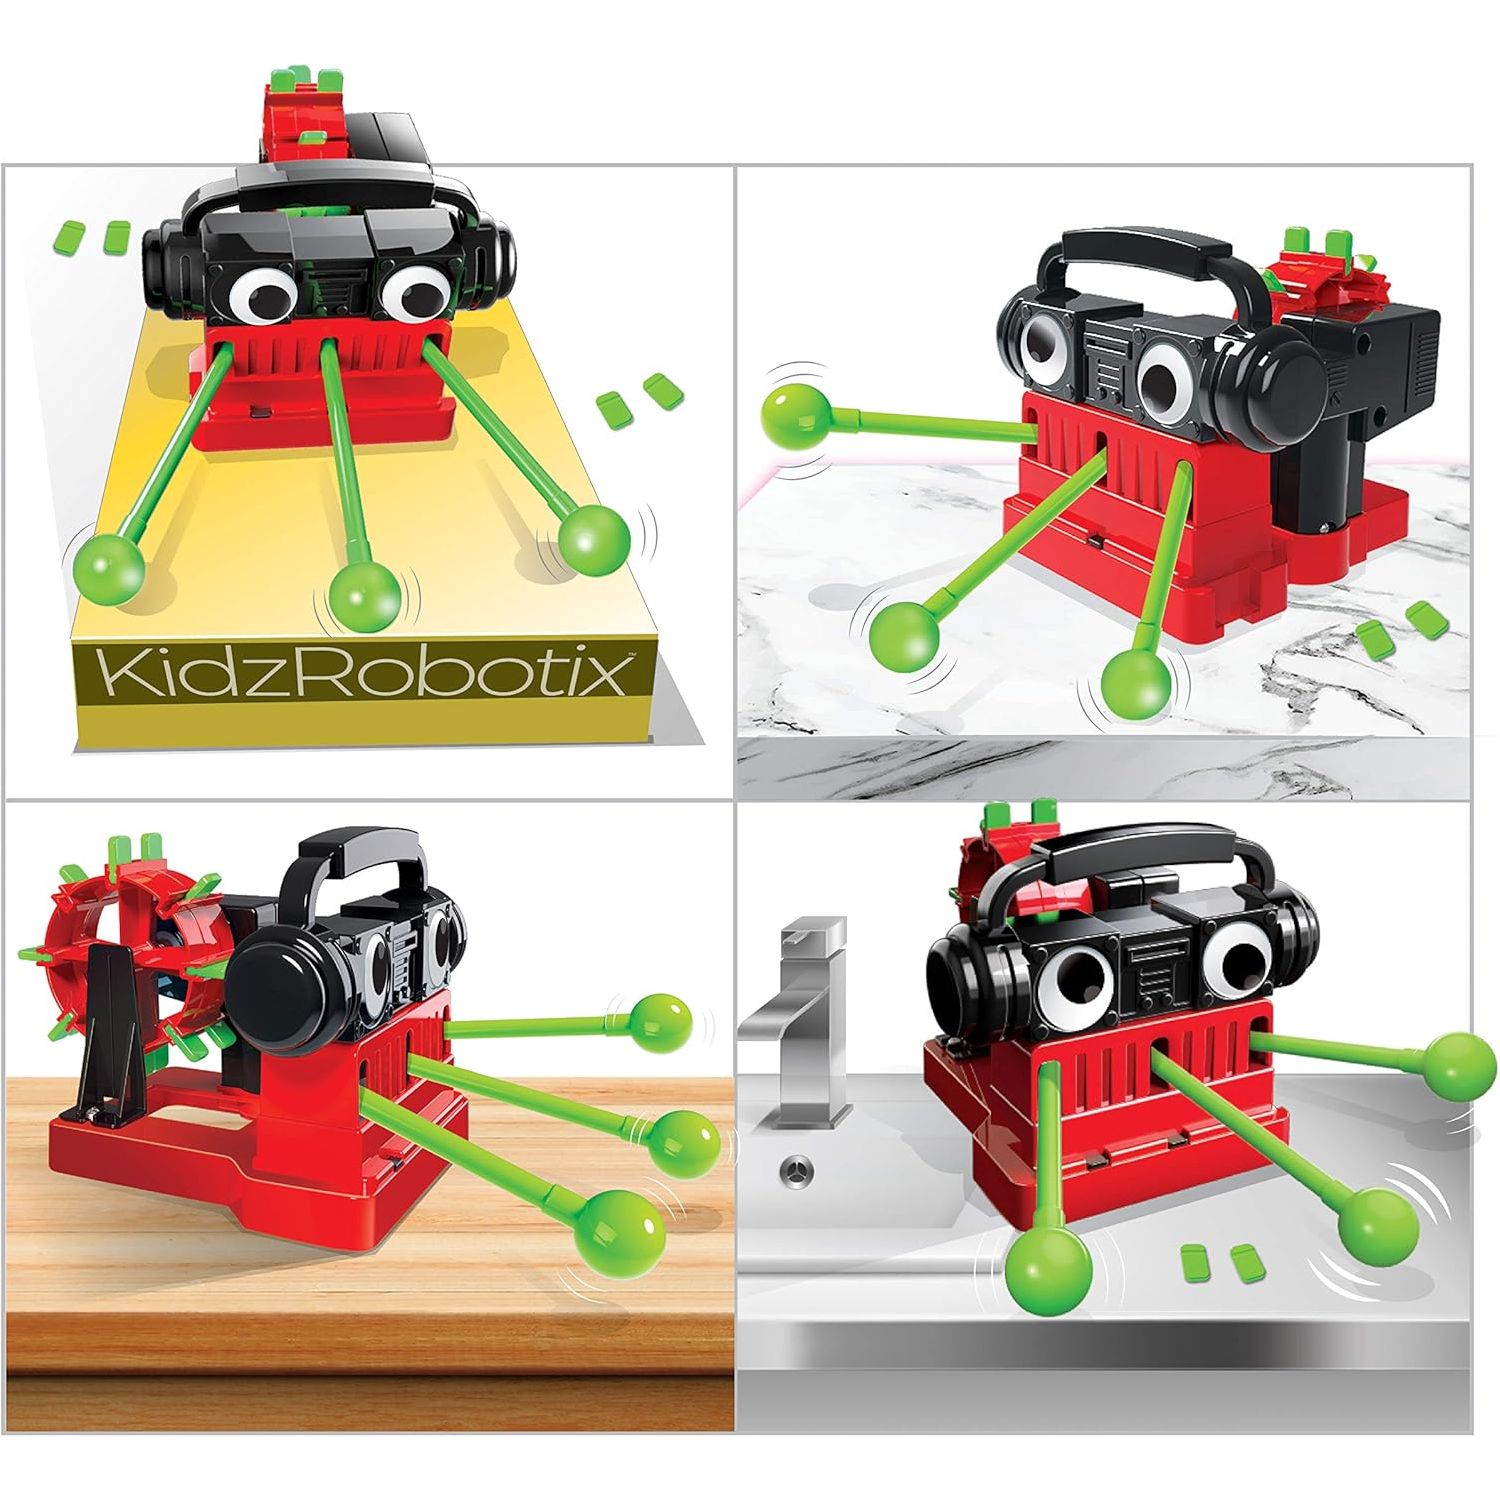 4M Kidzrobotix - Drummer robot